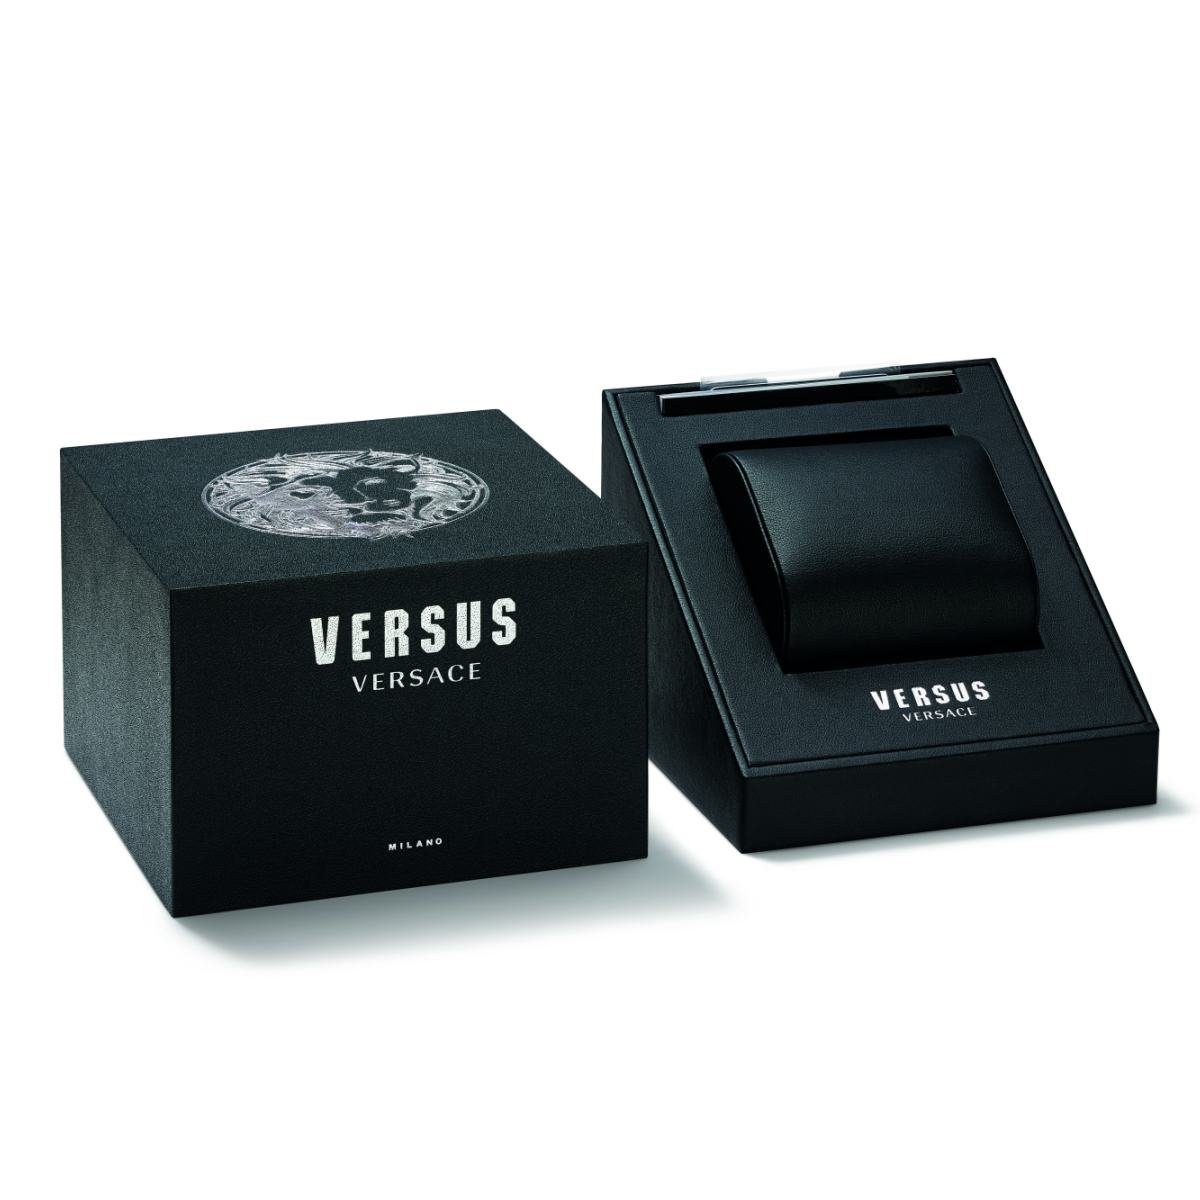 VSP560318 Versus Versace Quarzuhr